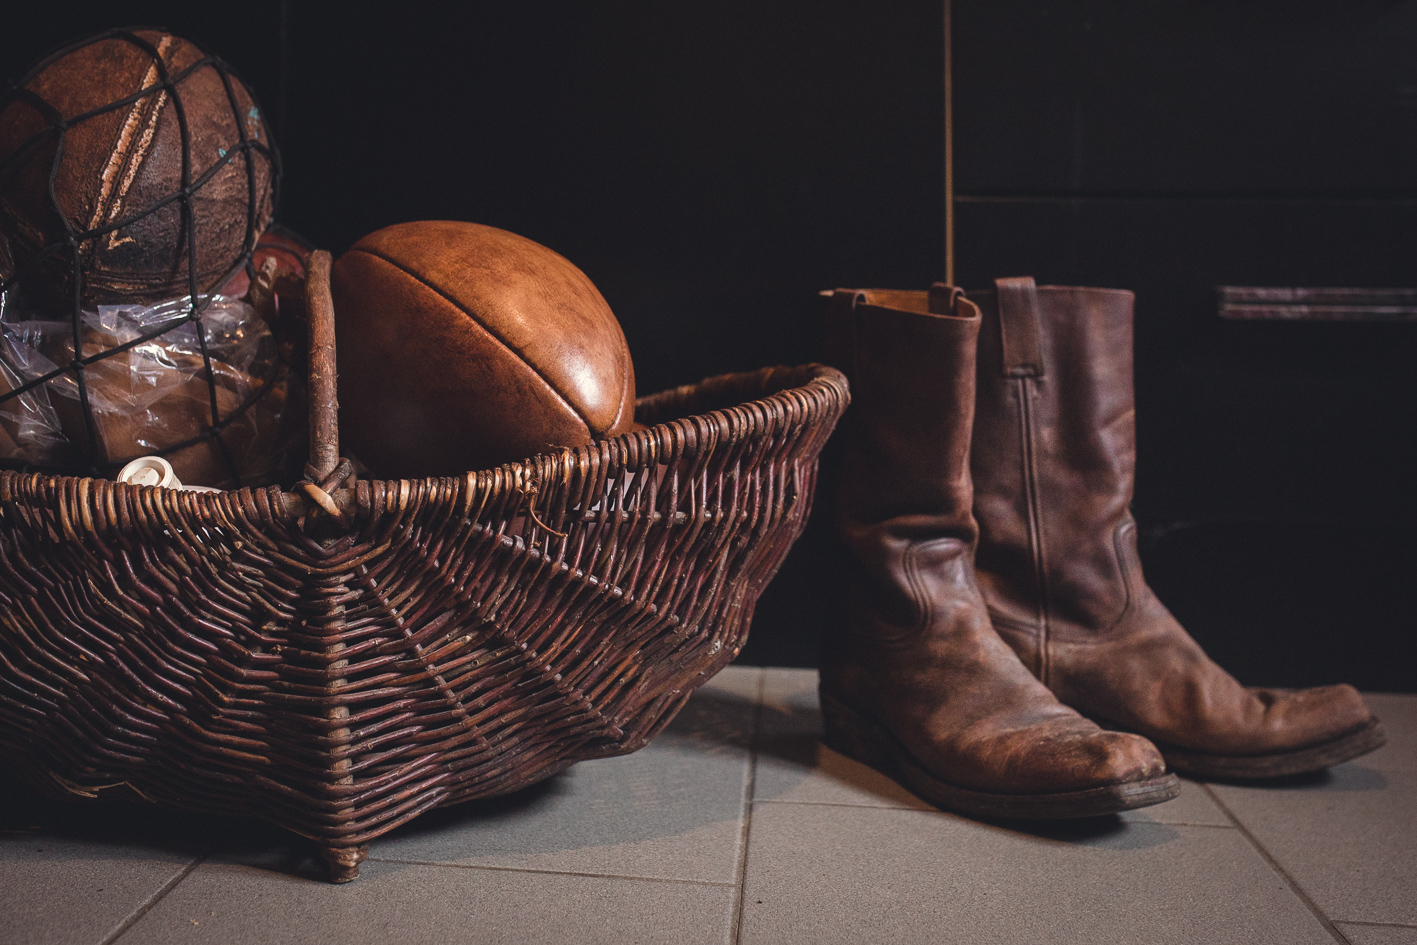 une pairs de botte au style cowboy sont posées a cote d'un panier avec un ballon de rugby